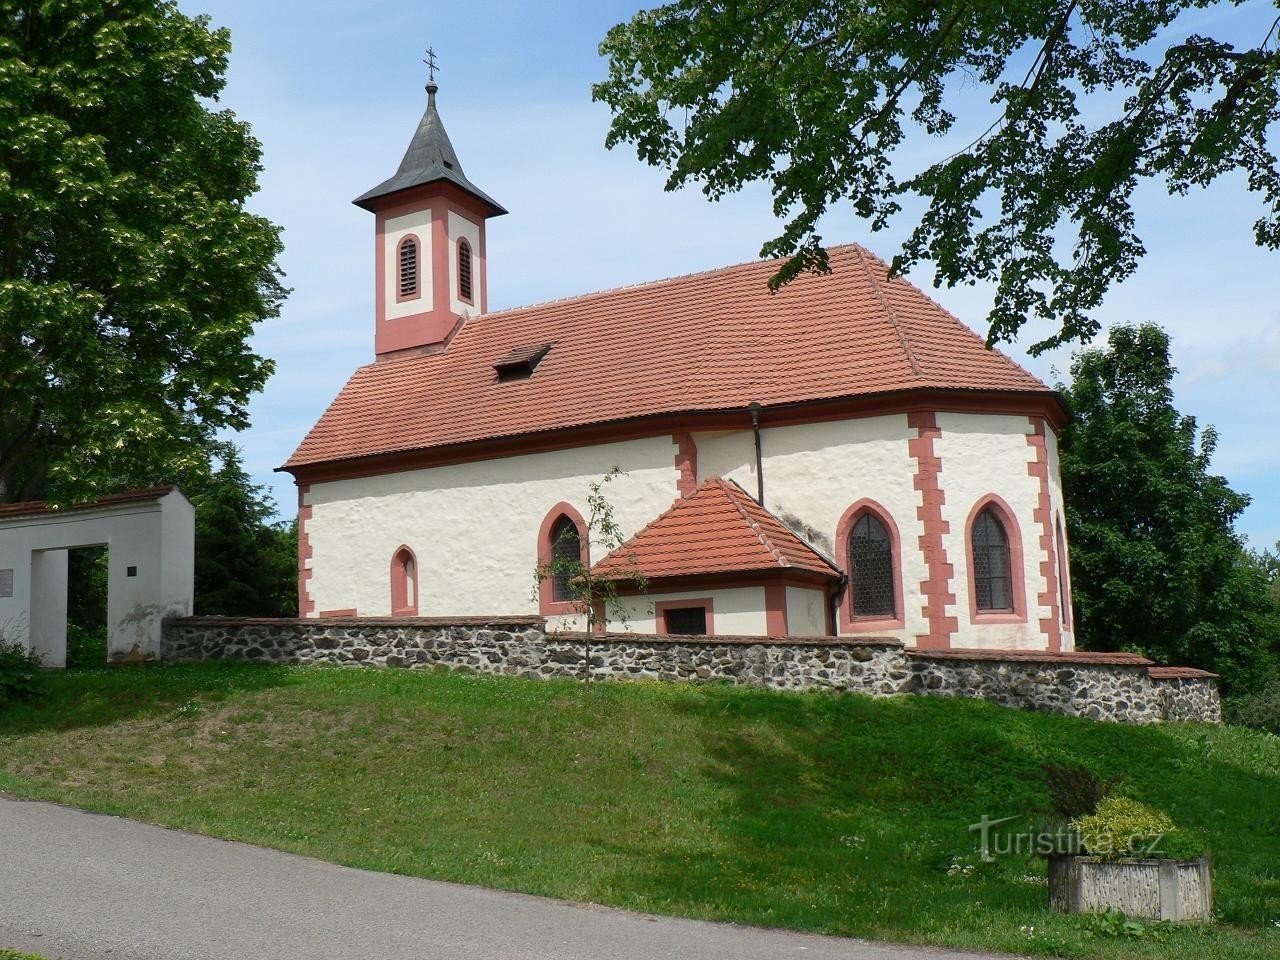 Zdemyslice, Südseite der Kirche